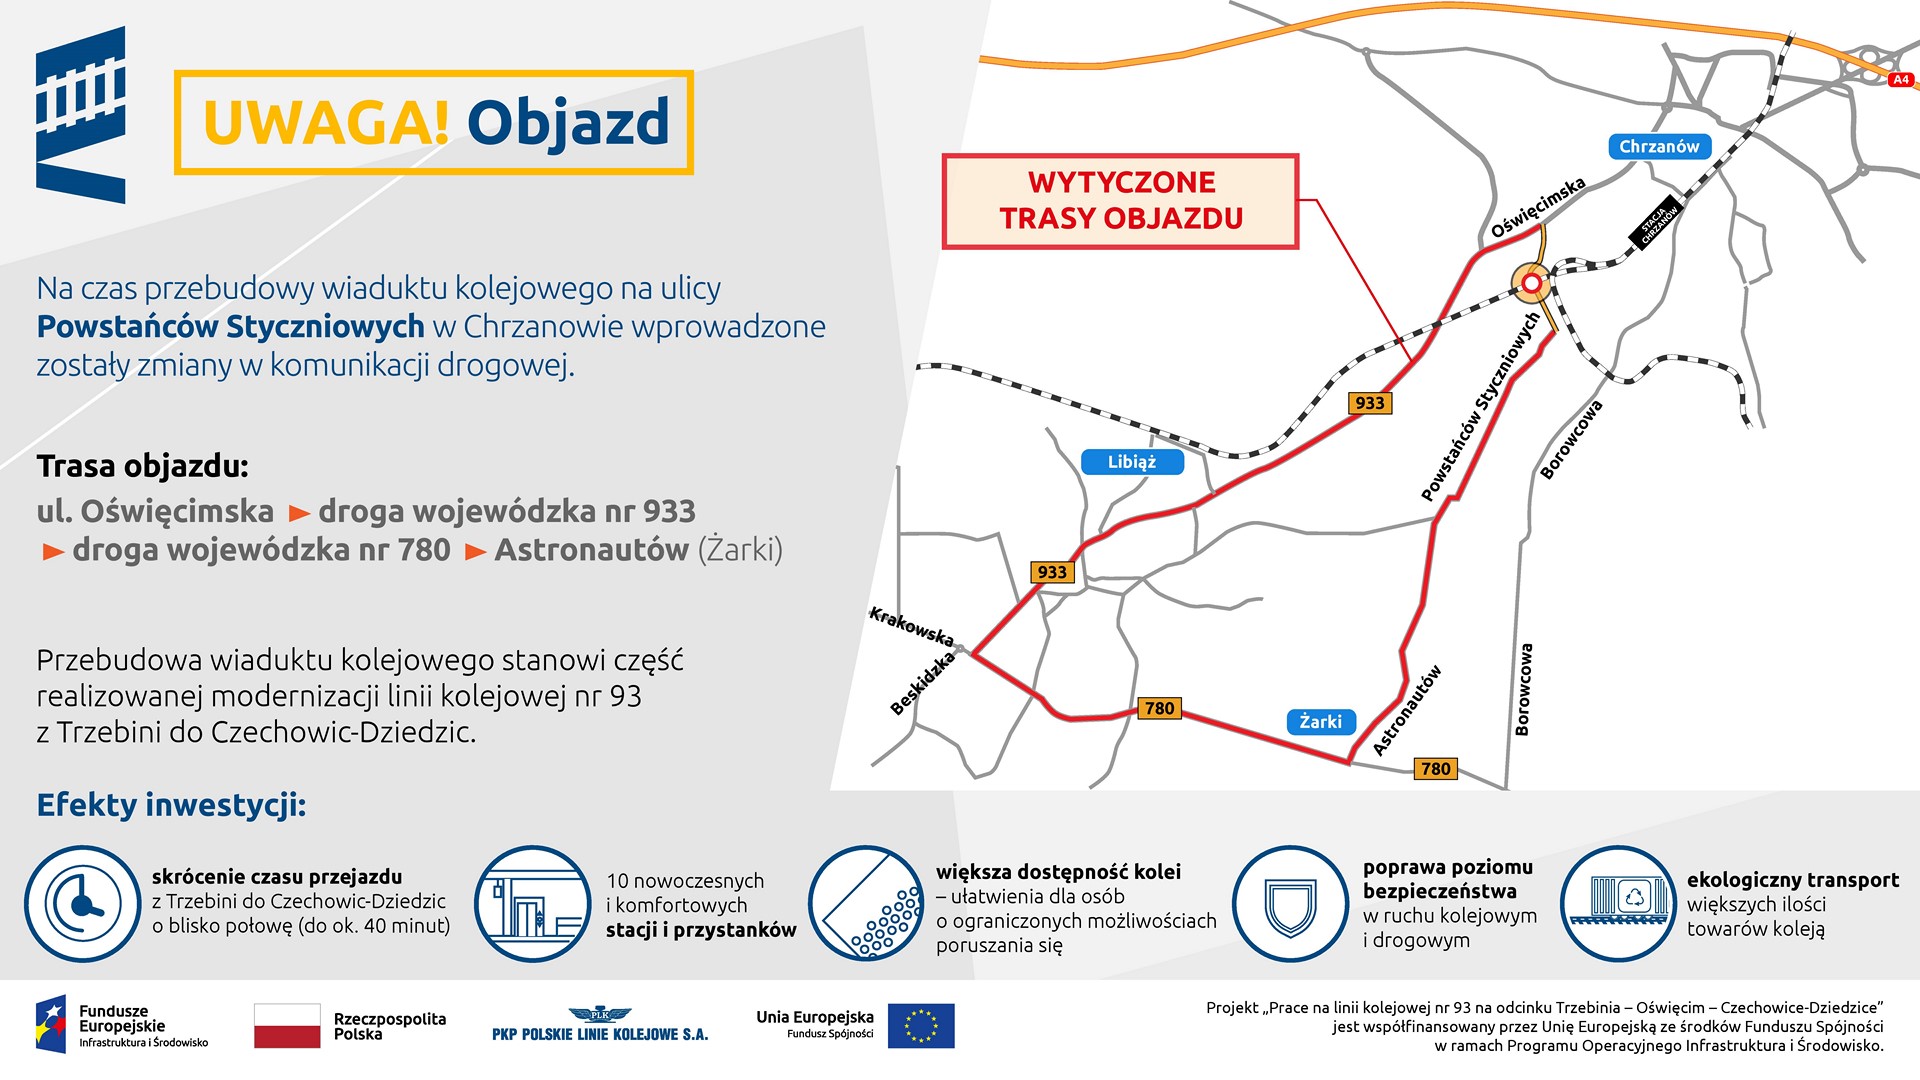 Infografika przedstawia trase objazdu na czas remontu wiaduktu w Chrzanowie na ulic Powstańców Styczniowych.